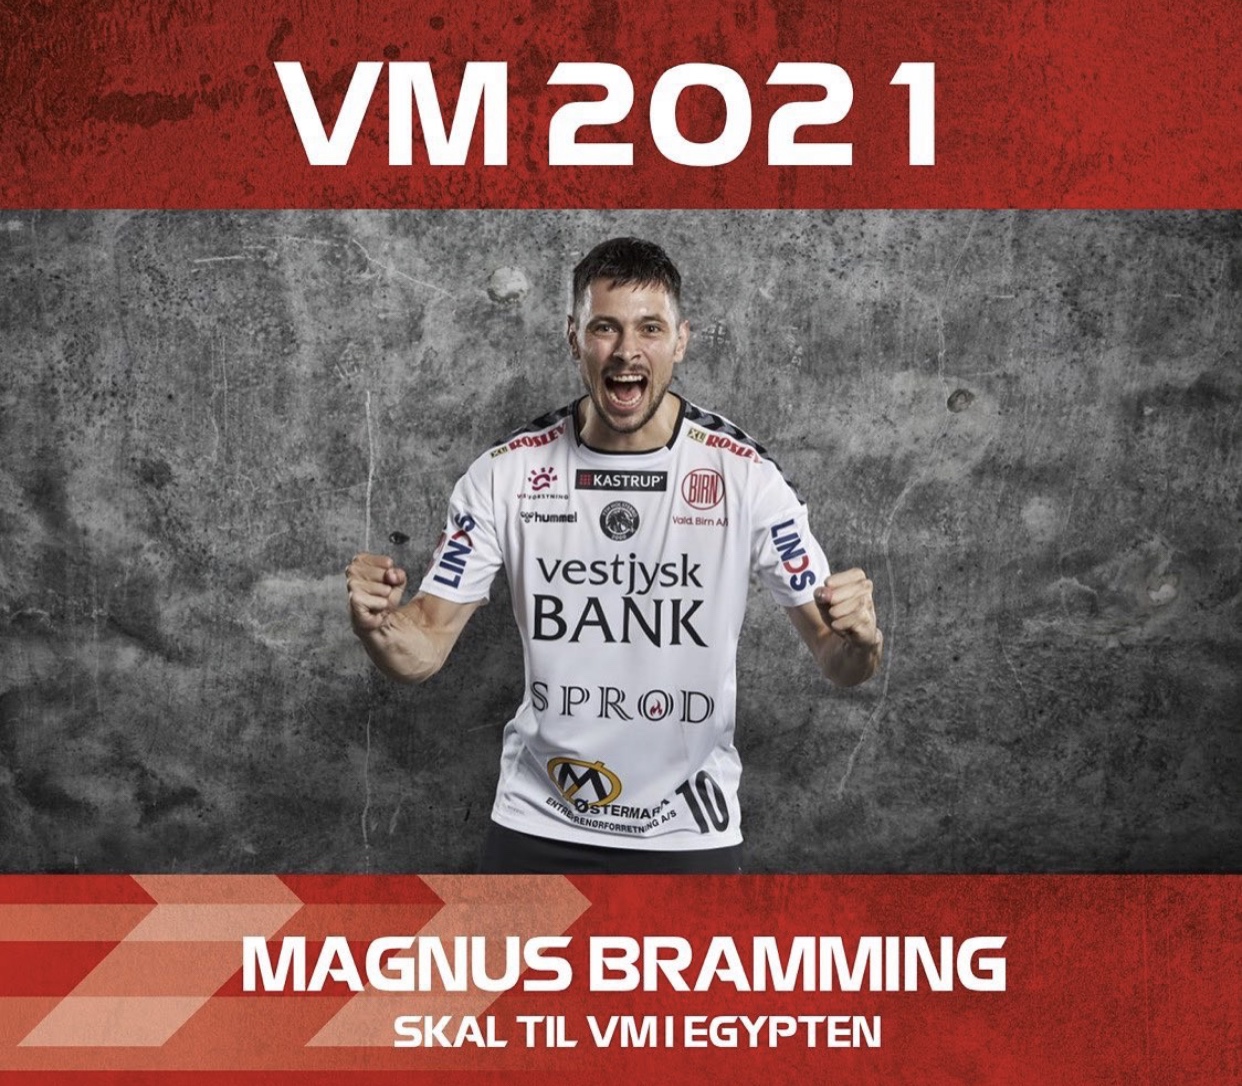 Magnus Bramming indkaldes til VM 2021